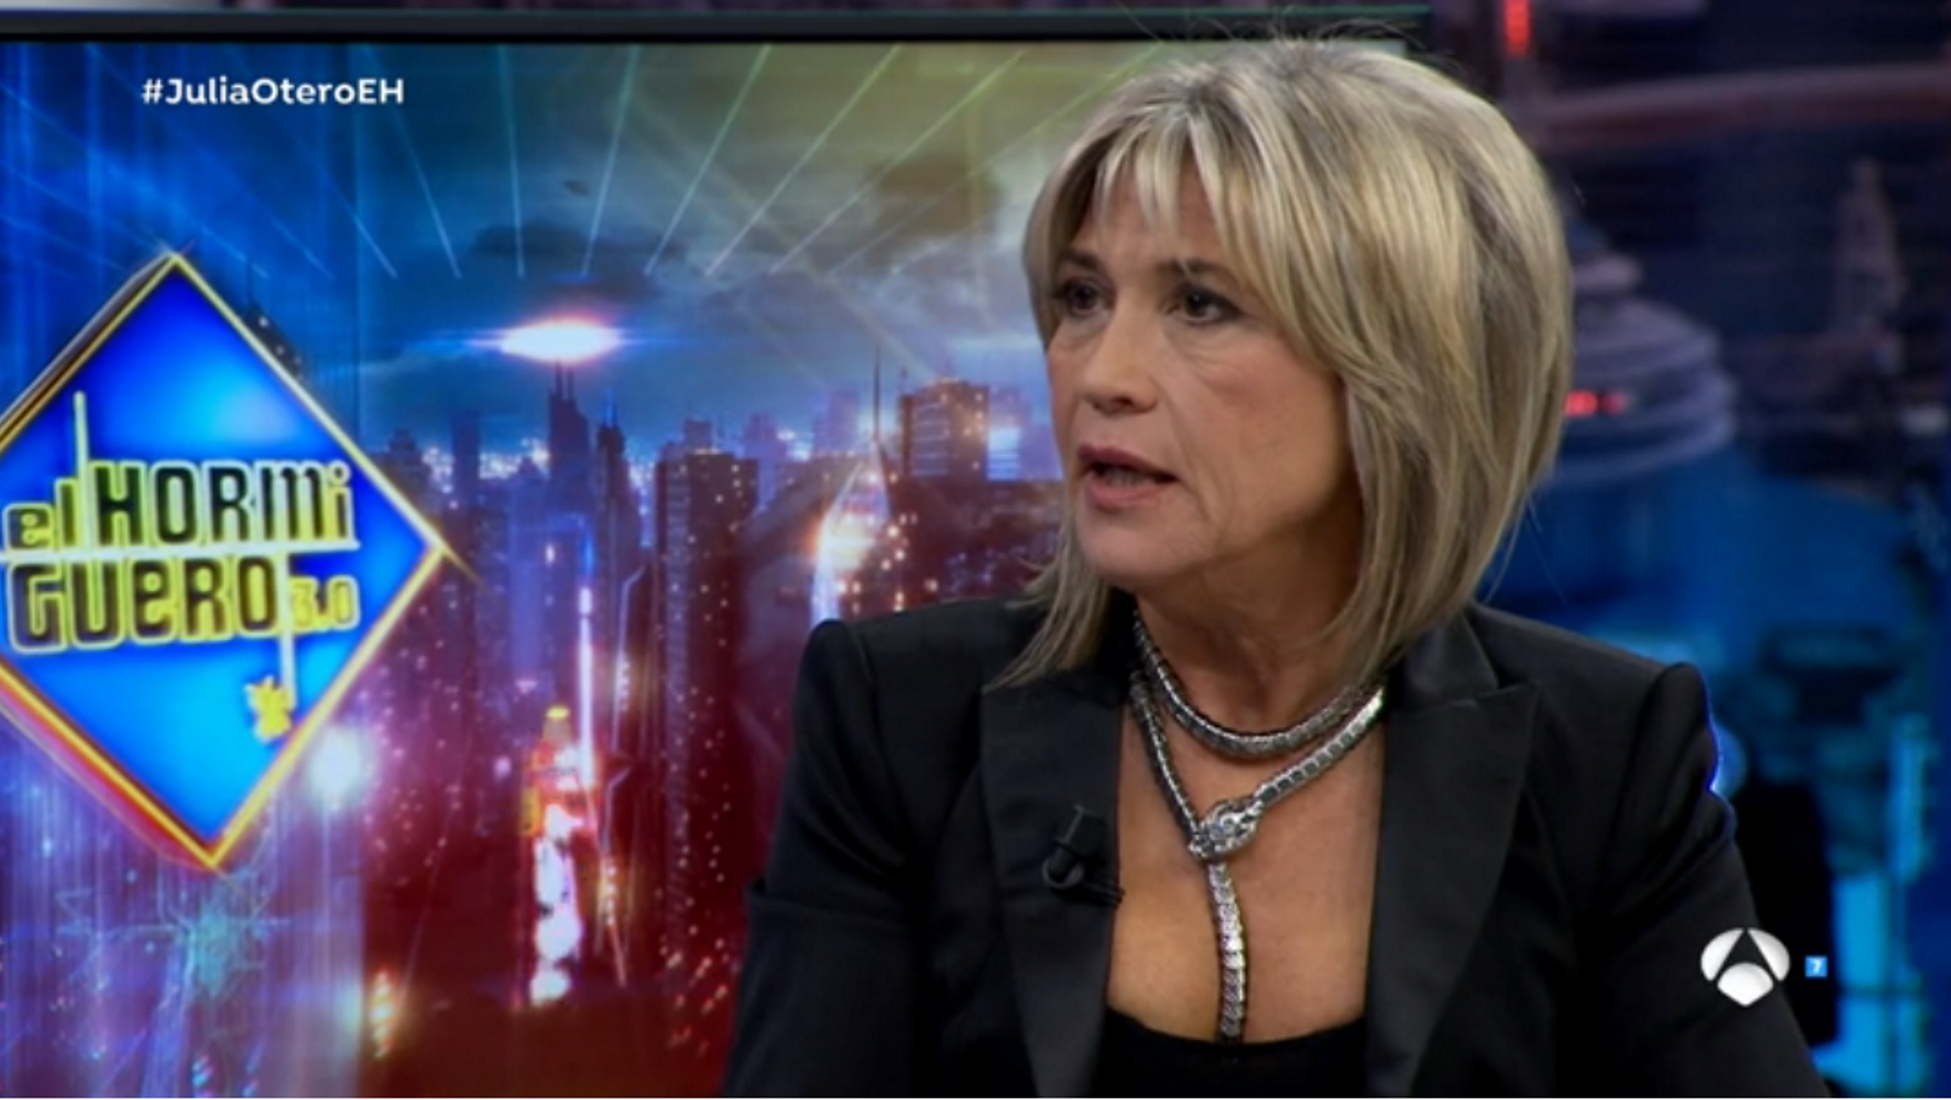 Julia Otero ataca a la Generalitat: "Como no soy independentista, no cuento"